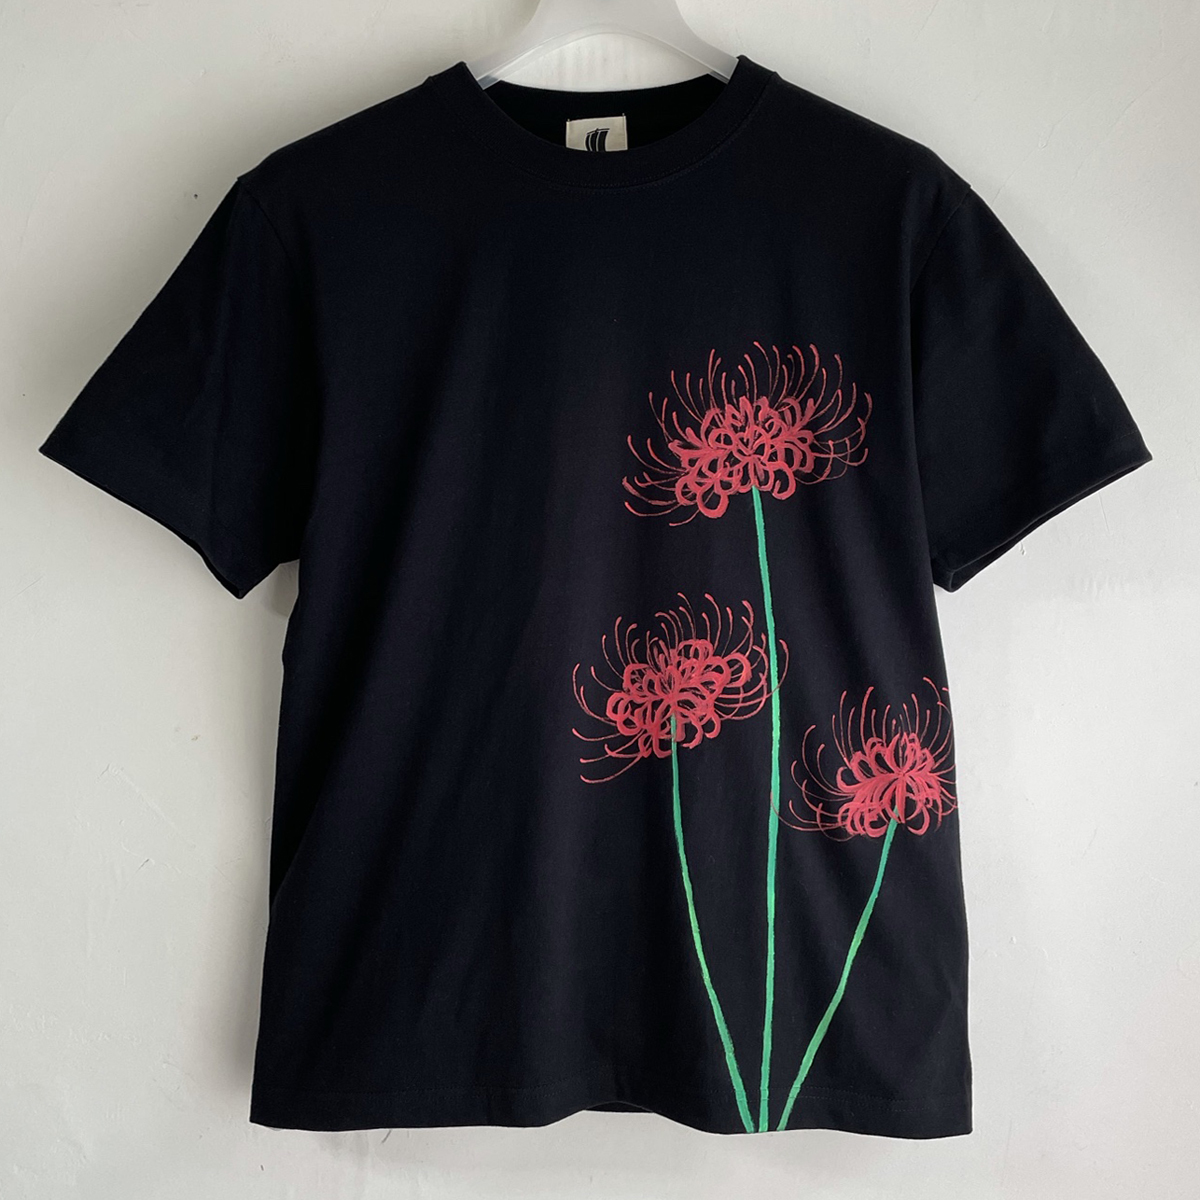 メンズ Tシャツ XLサイズ 彼岸花柄Tシャツ 黒 ハンドメイド 手描きTシャツ 和柄 花柄 秋冬, XLサイズ以上, 丸首, 柄もの